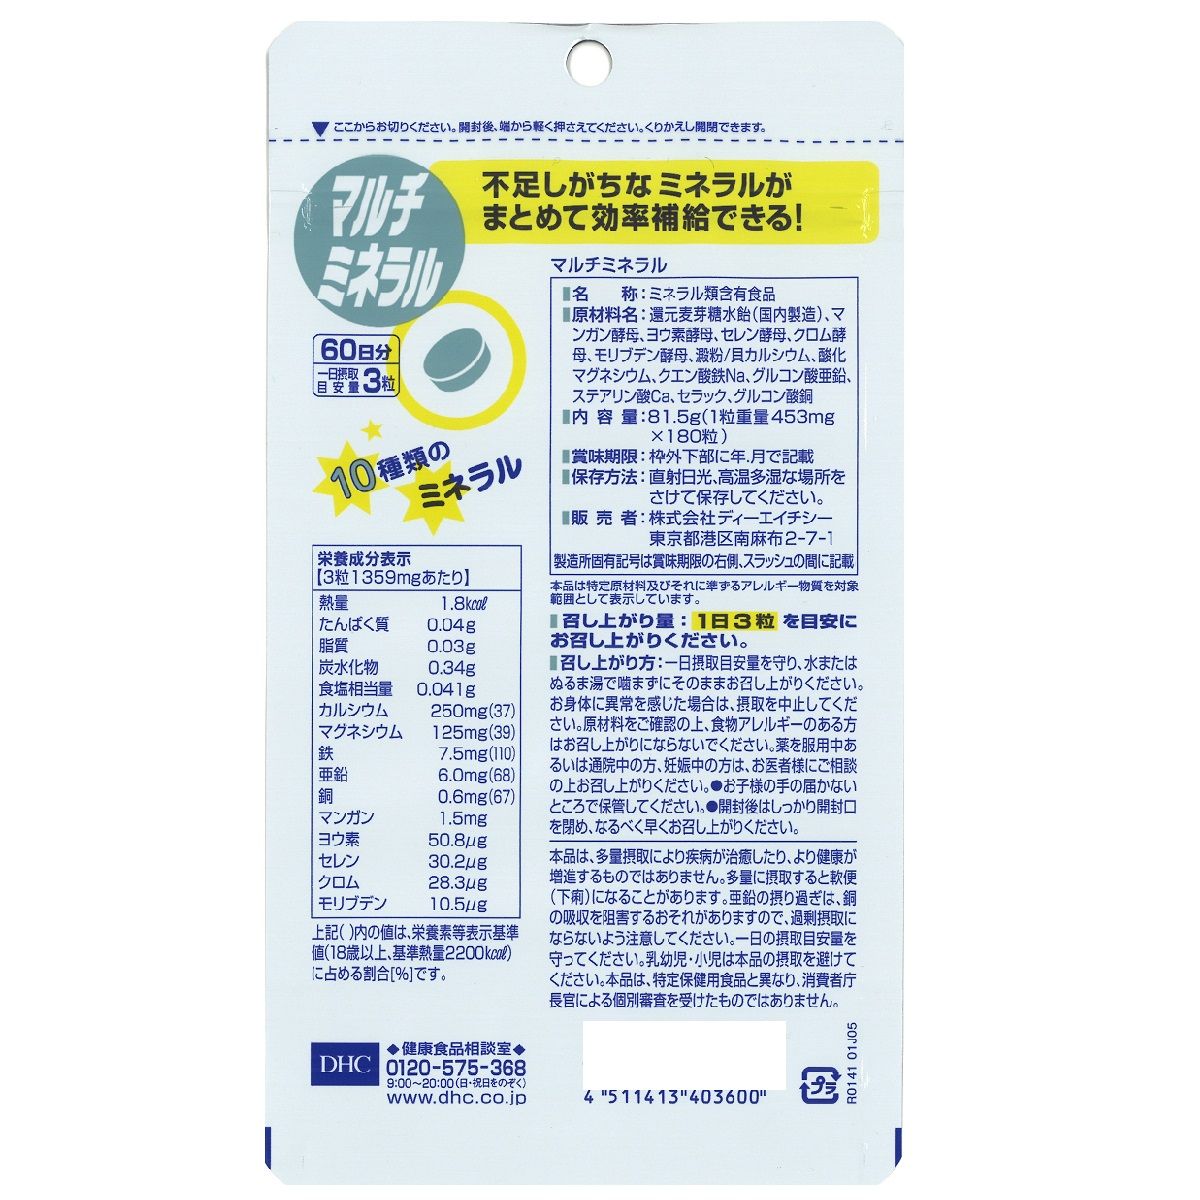 DHC 60日分 マルチミネラル 健康食品 サプリメント　2袋セット